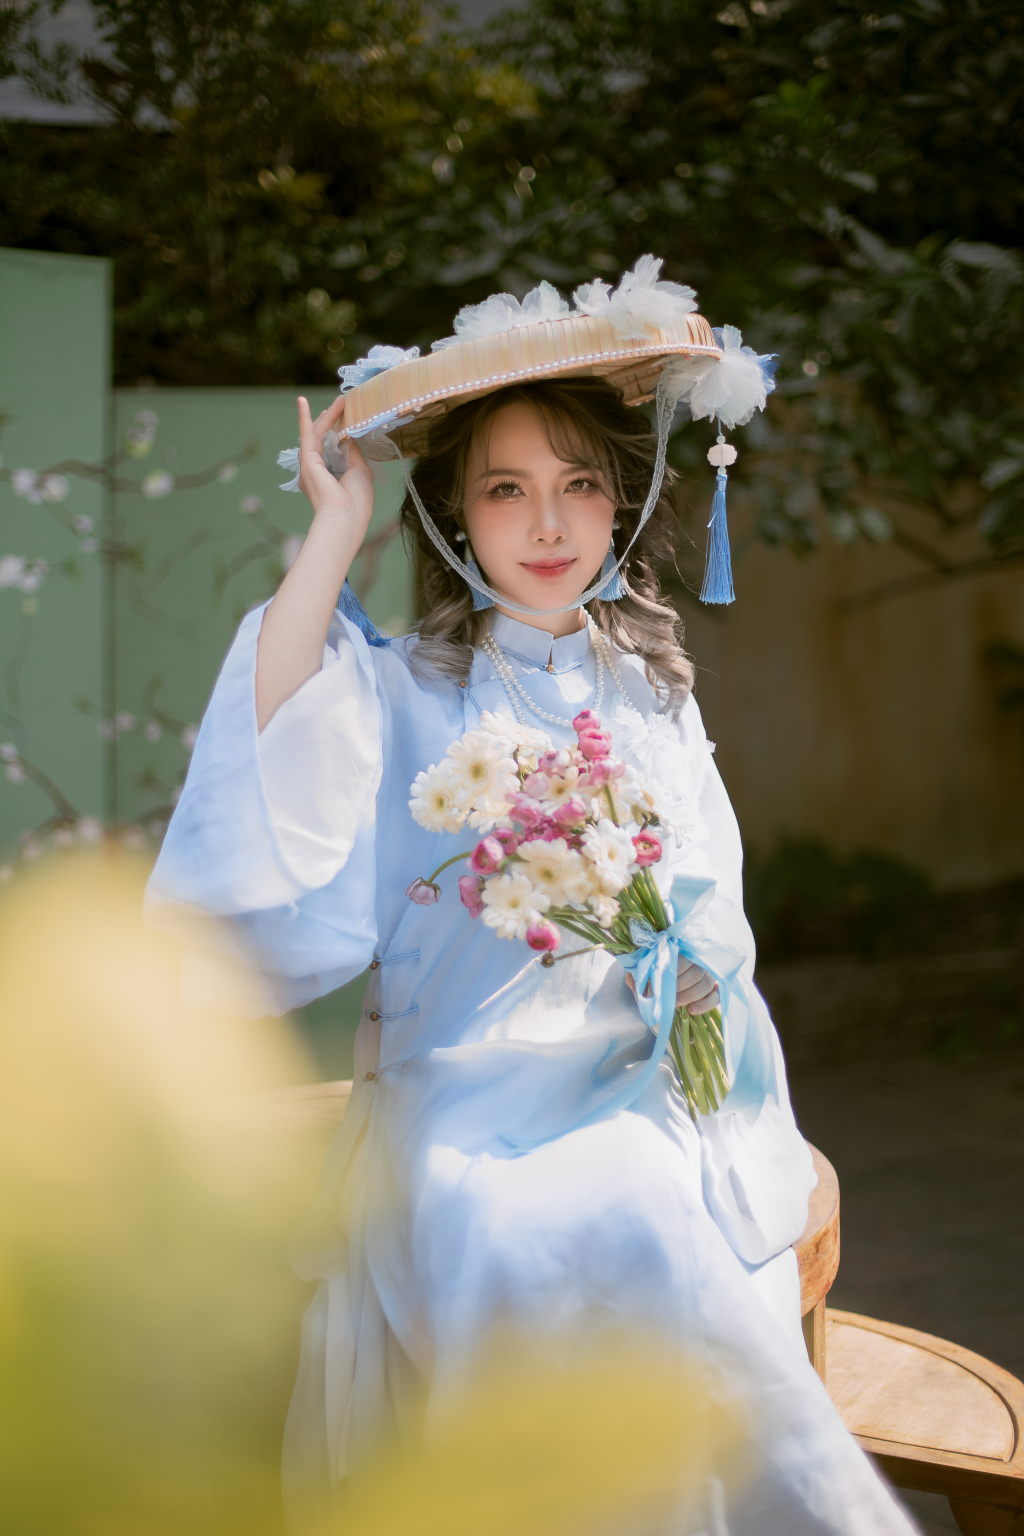 Vũ Thu Phương, cô gái trẻ tự hào đưa hình ảnh áo dài đến với bạn bè quốc tế như một thông điệp về vẻ đẹp, văn hóa Việt